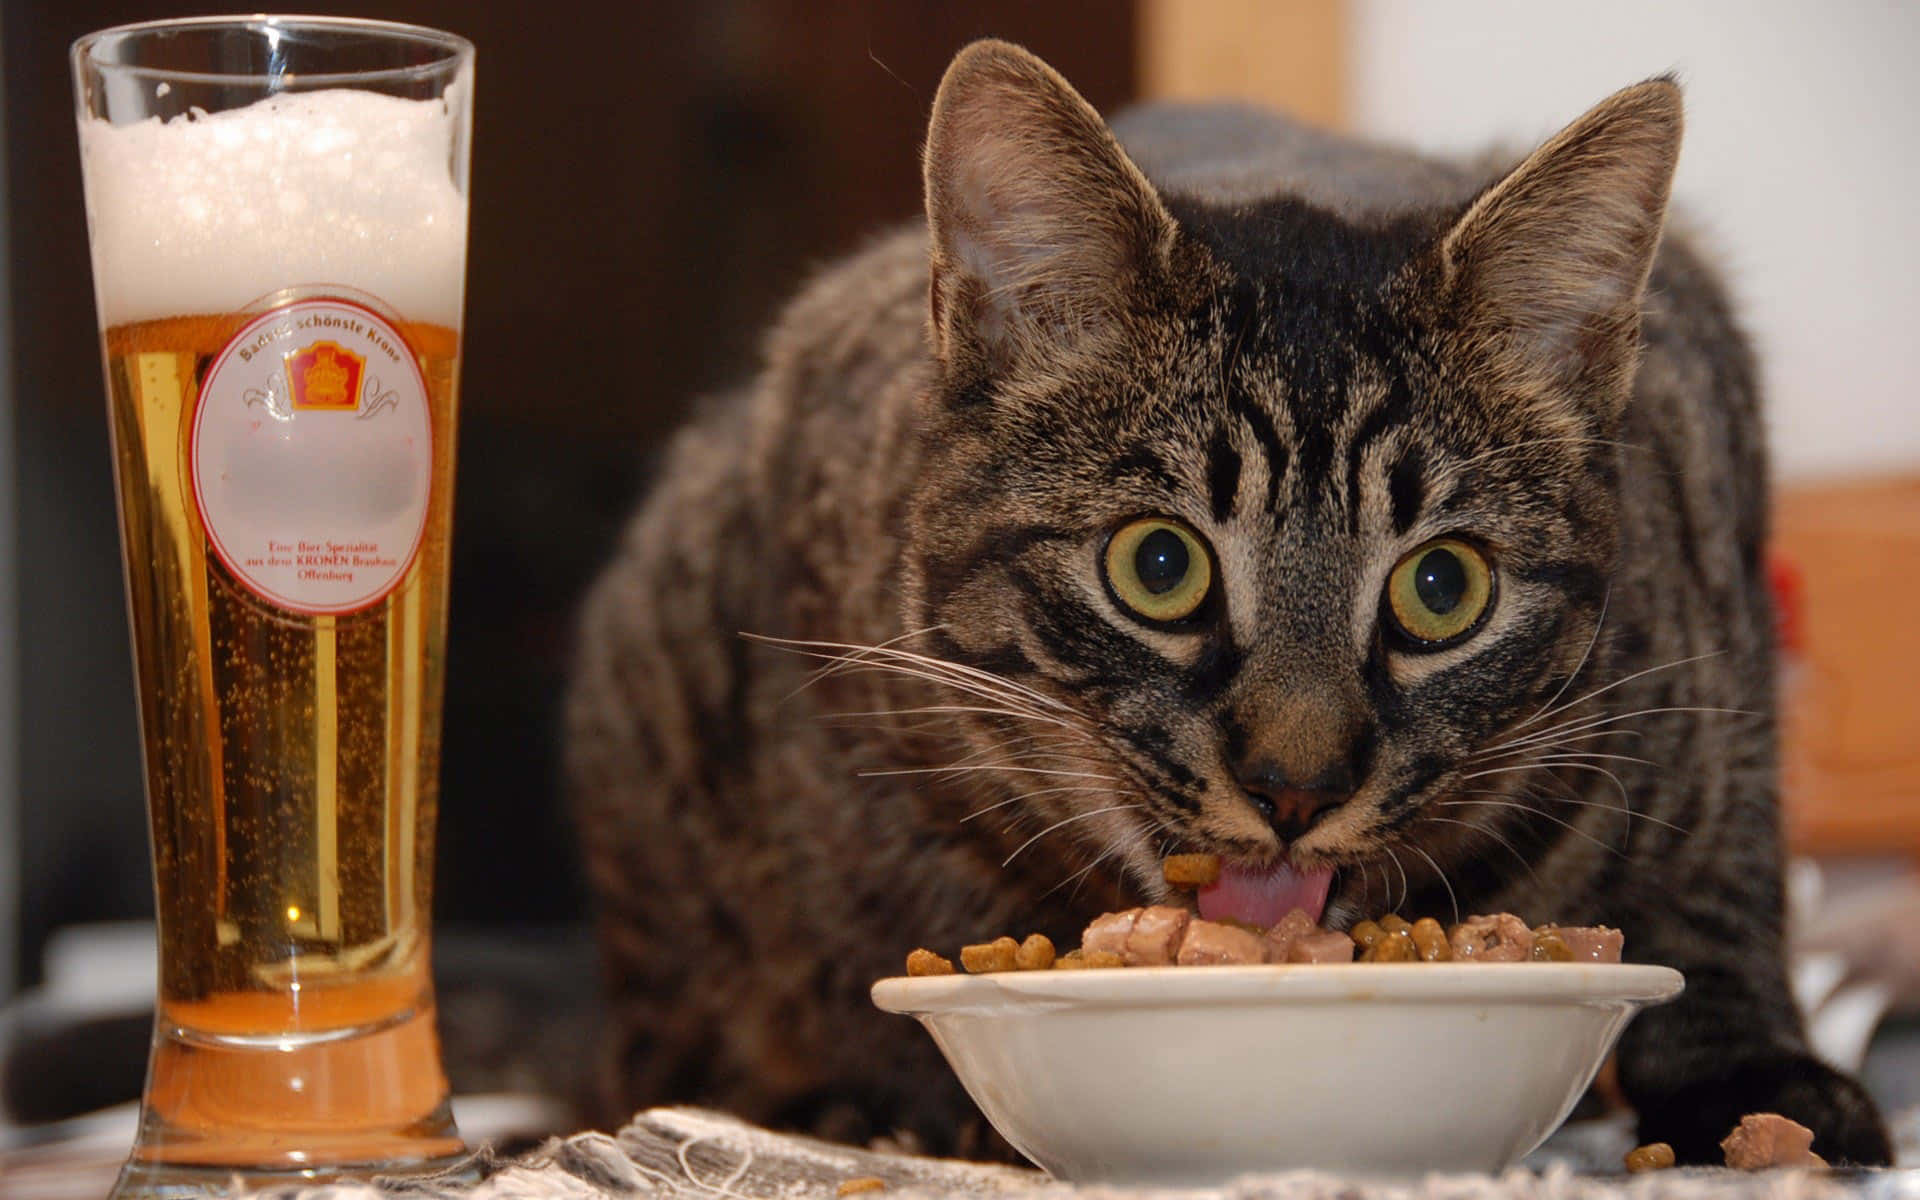 Sjovtbillede Af En Kat, Der Spiser